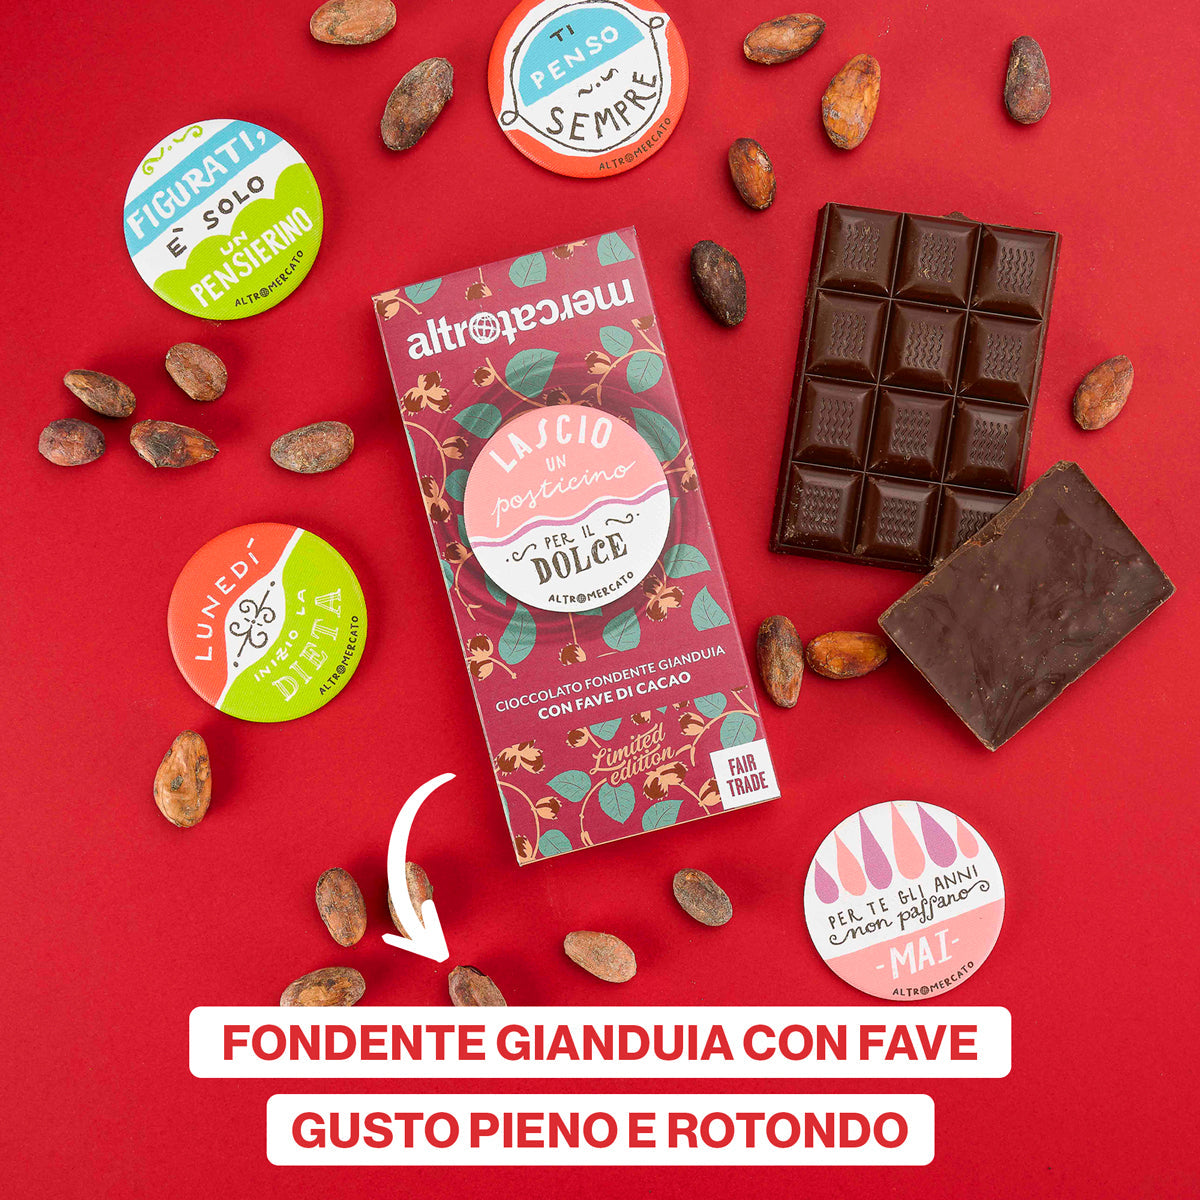 Cioccolato fondente gianduja con fave di cacao 100 g + calamita OMAGGIO